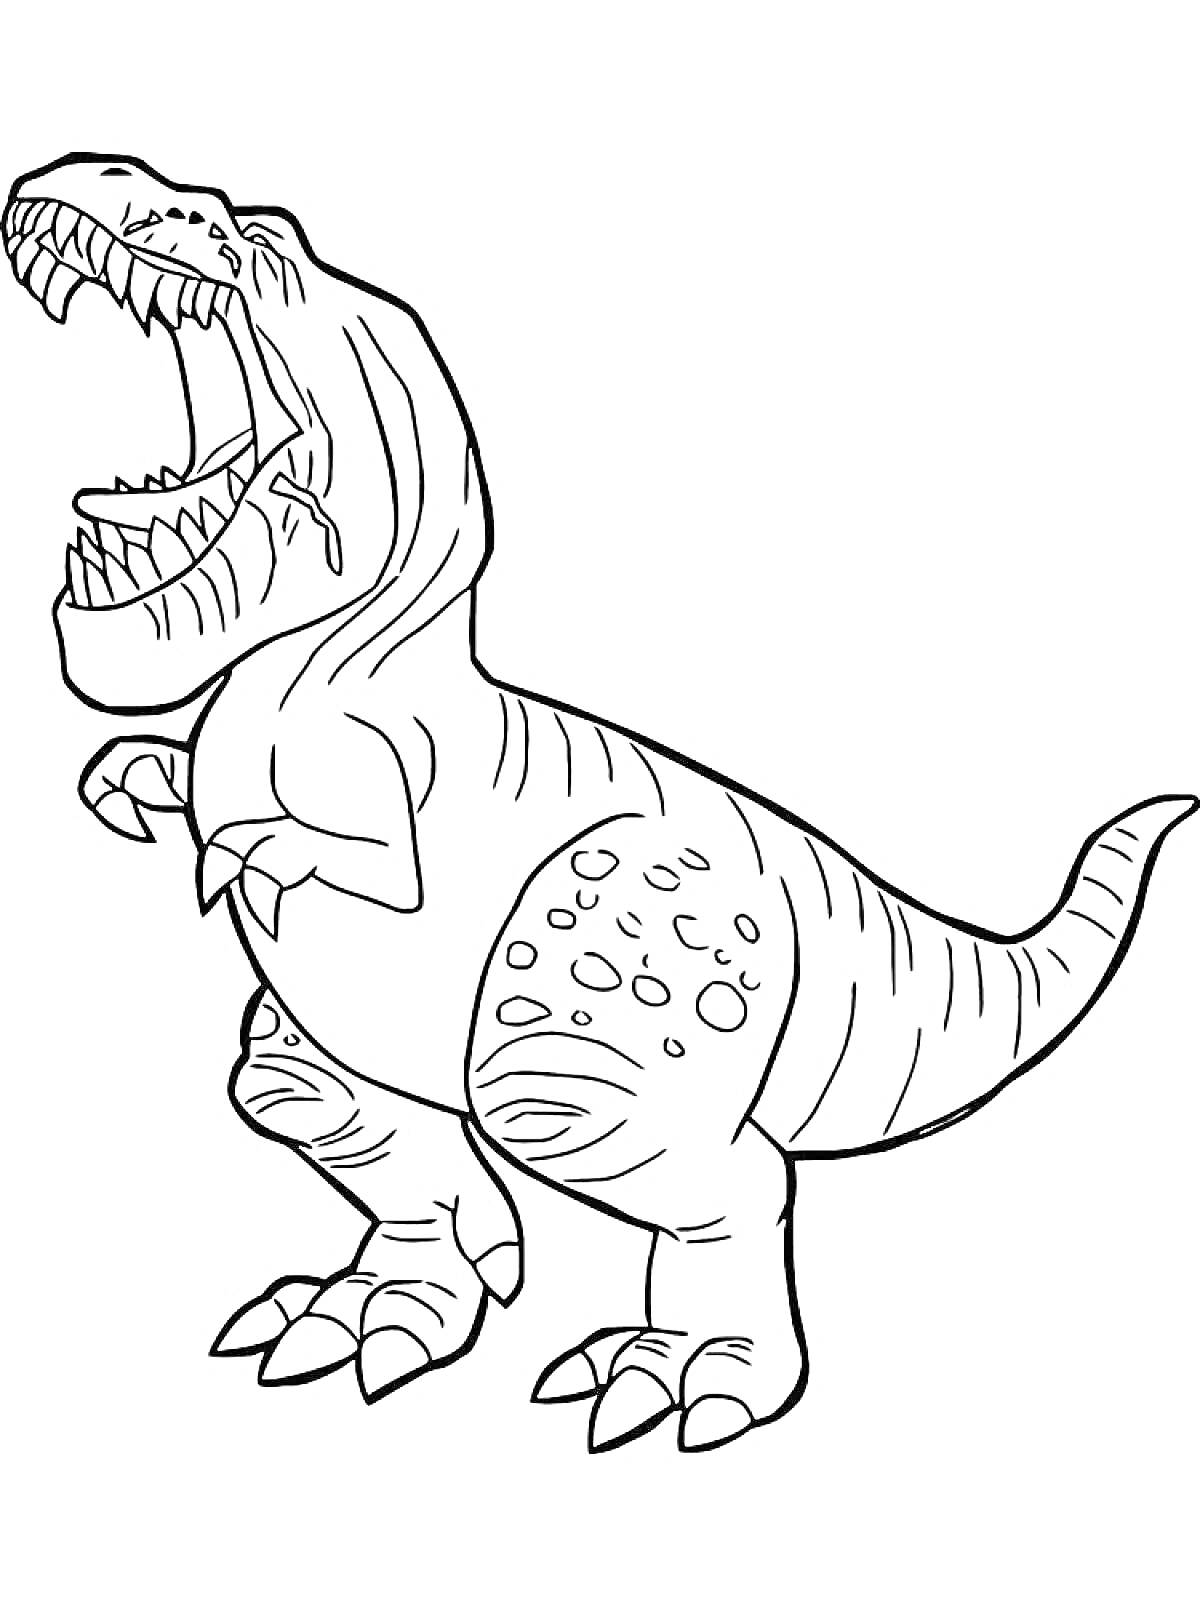 Раскраска Тираннозавр с раскрытой пастью, стоящий на задних лапах